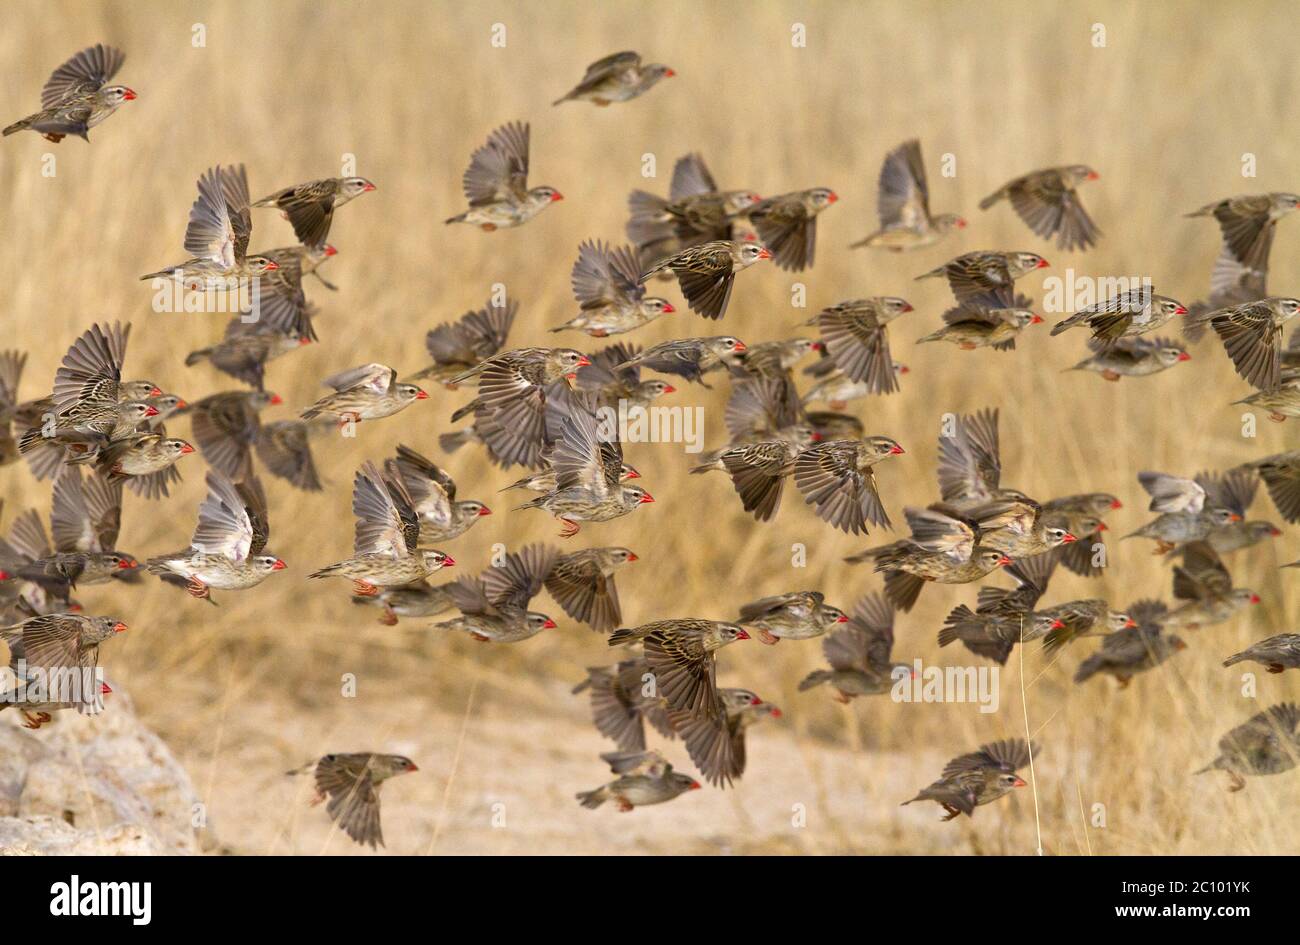 swarm of quela small birds Stock Photo